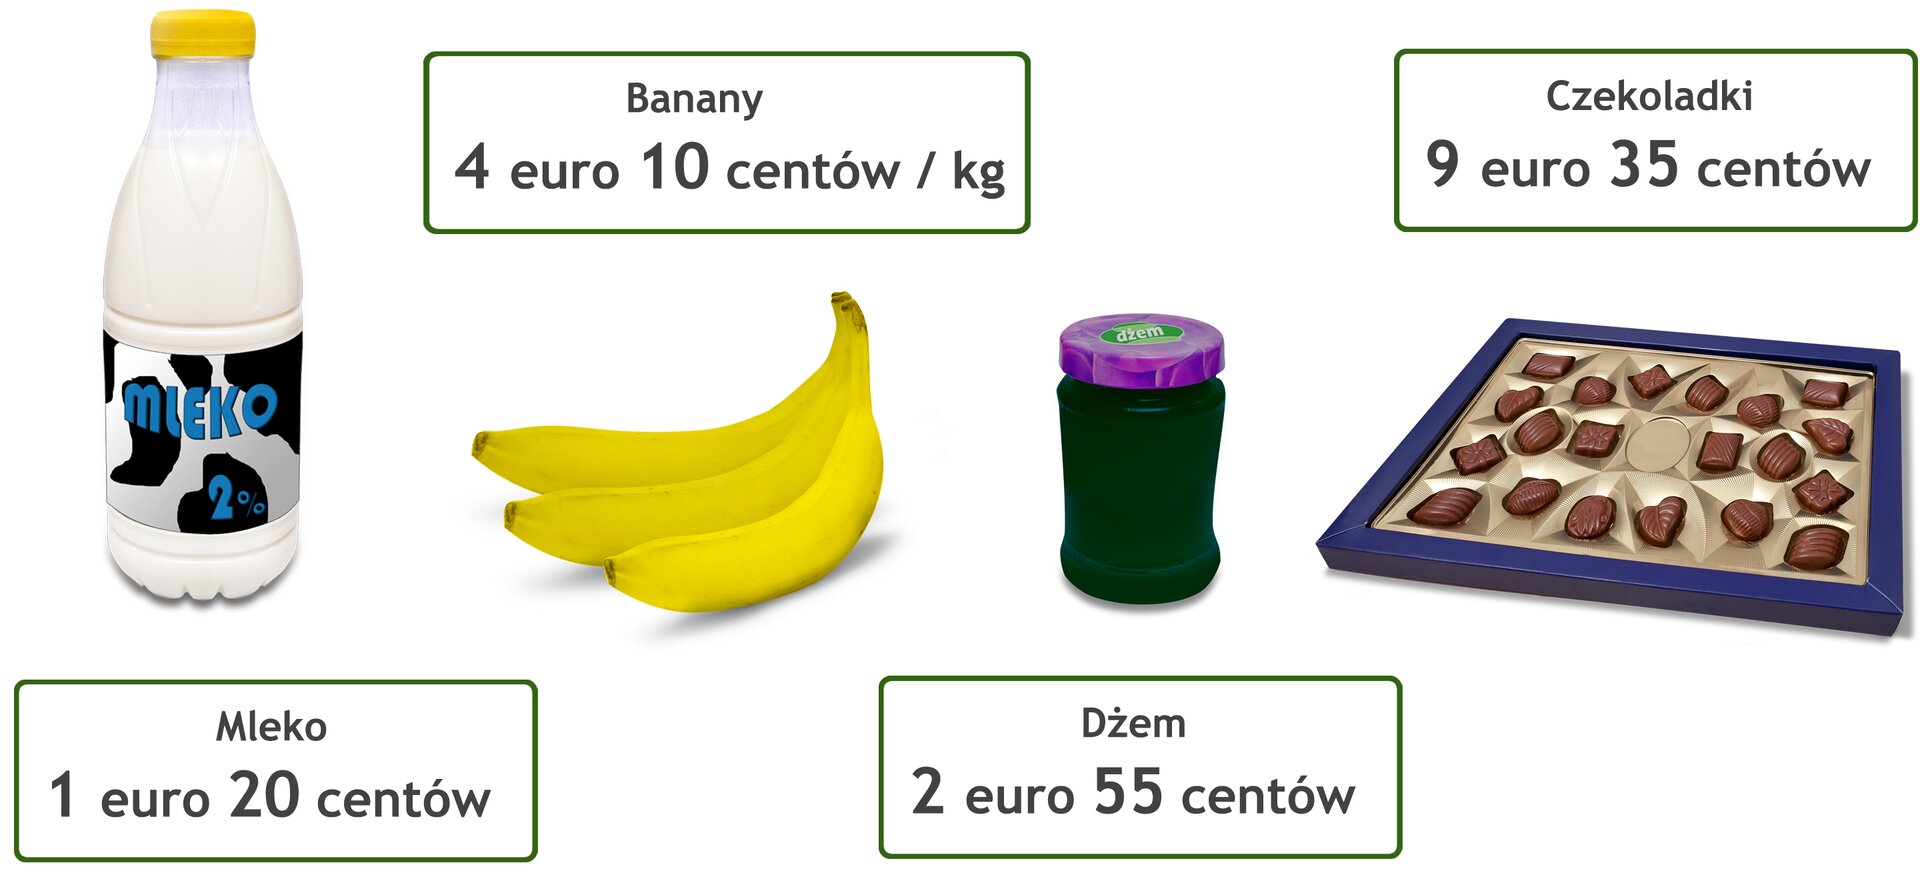 Rysunek czterech artykułów spożywczych. Mleko - cena 1 euro 20 centów. Banany - cena 4 euro 10 centów za kilogram. Czekoladki - cena 9 euro 35 centów. Dżem - cena 2 euro 55 centów.